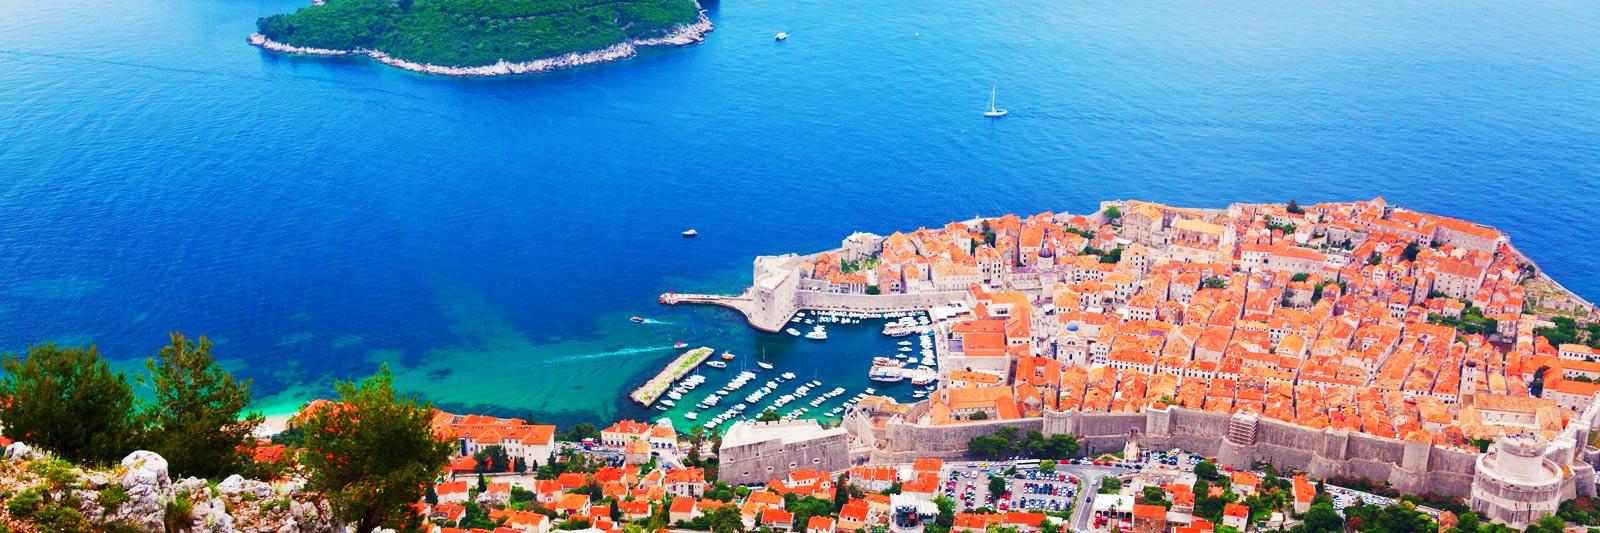 Poolurlaub in Kroatien - 86.811 Ferienwohnungen und Ferienhäuser mit Pool - tourist-online.de